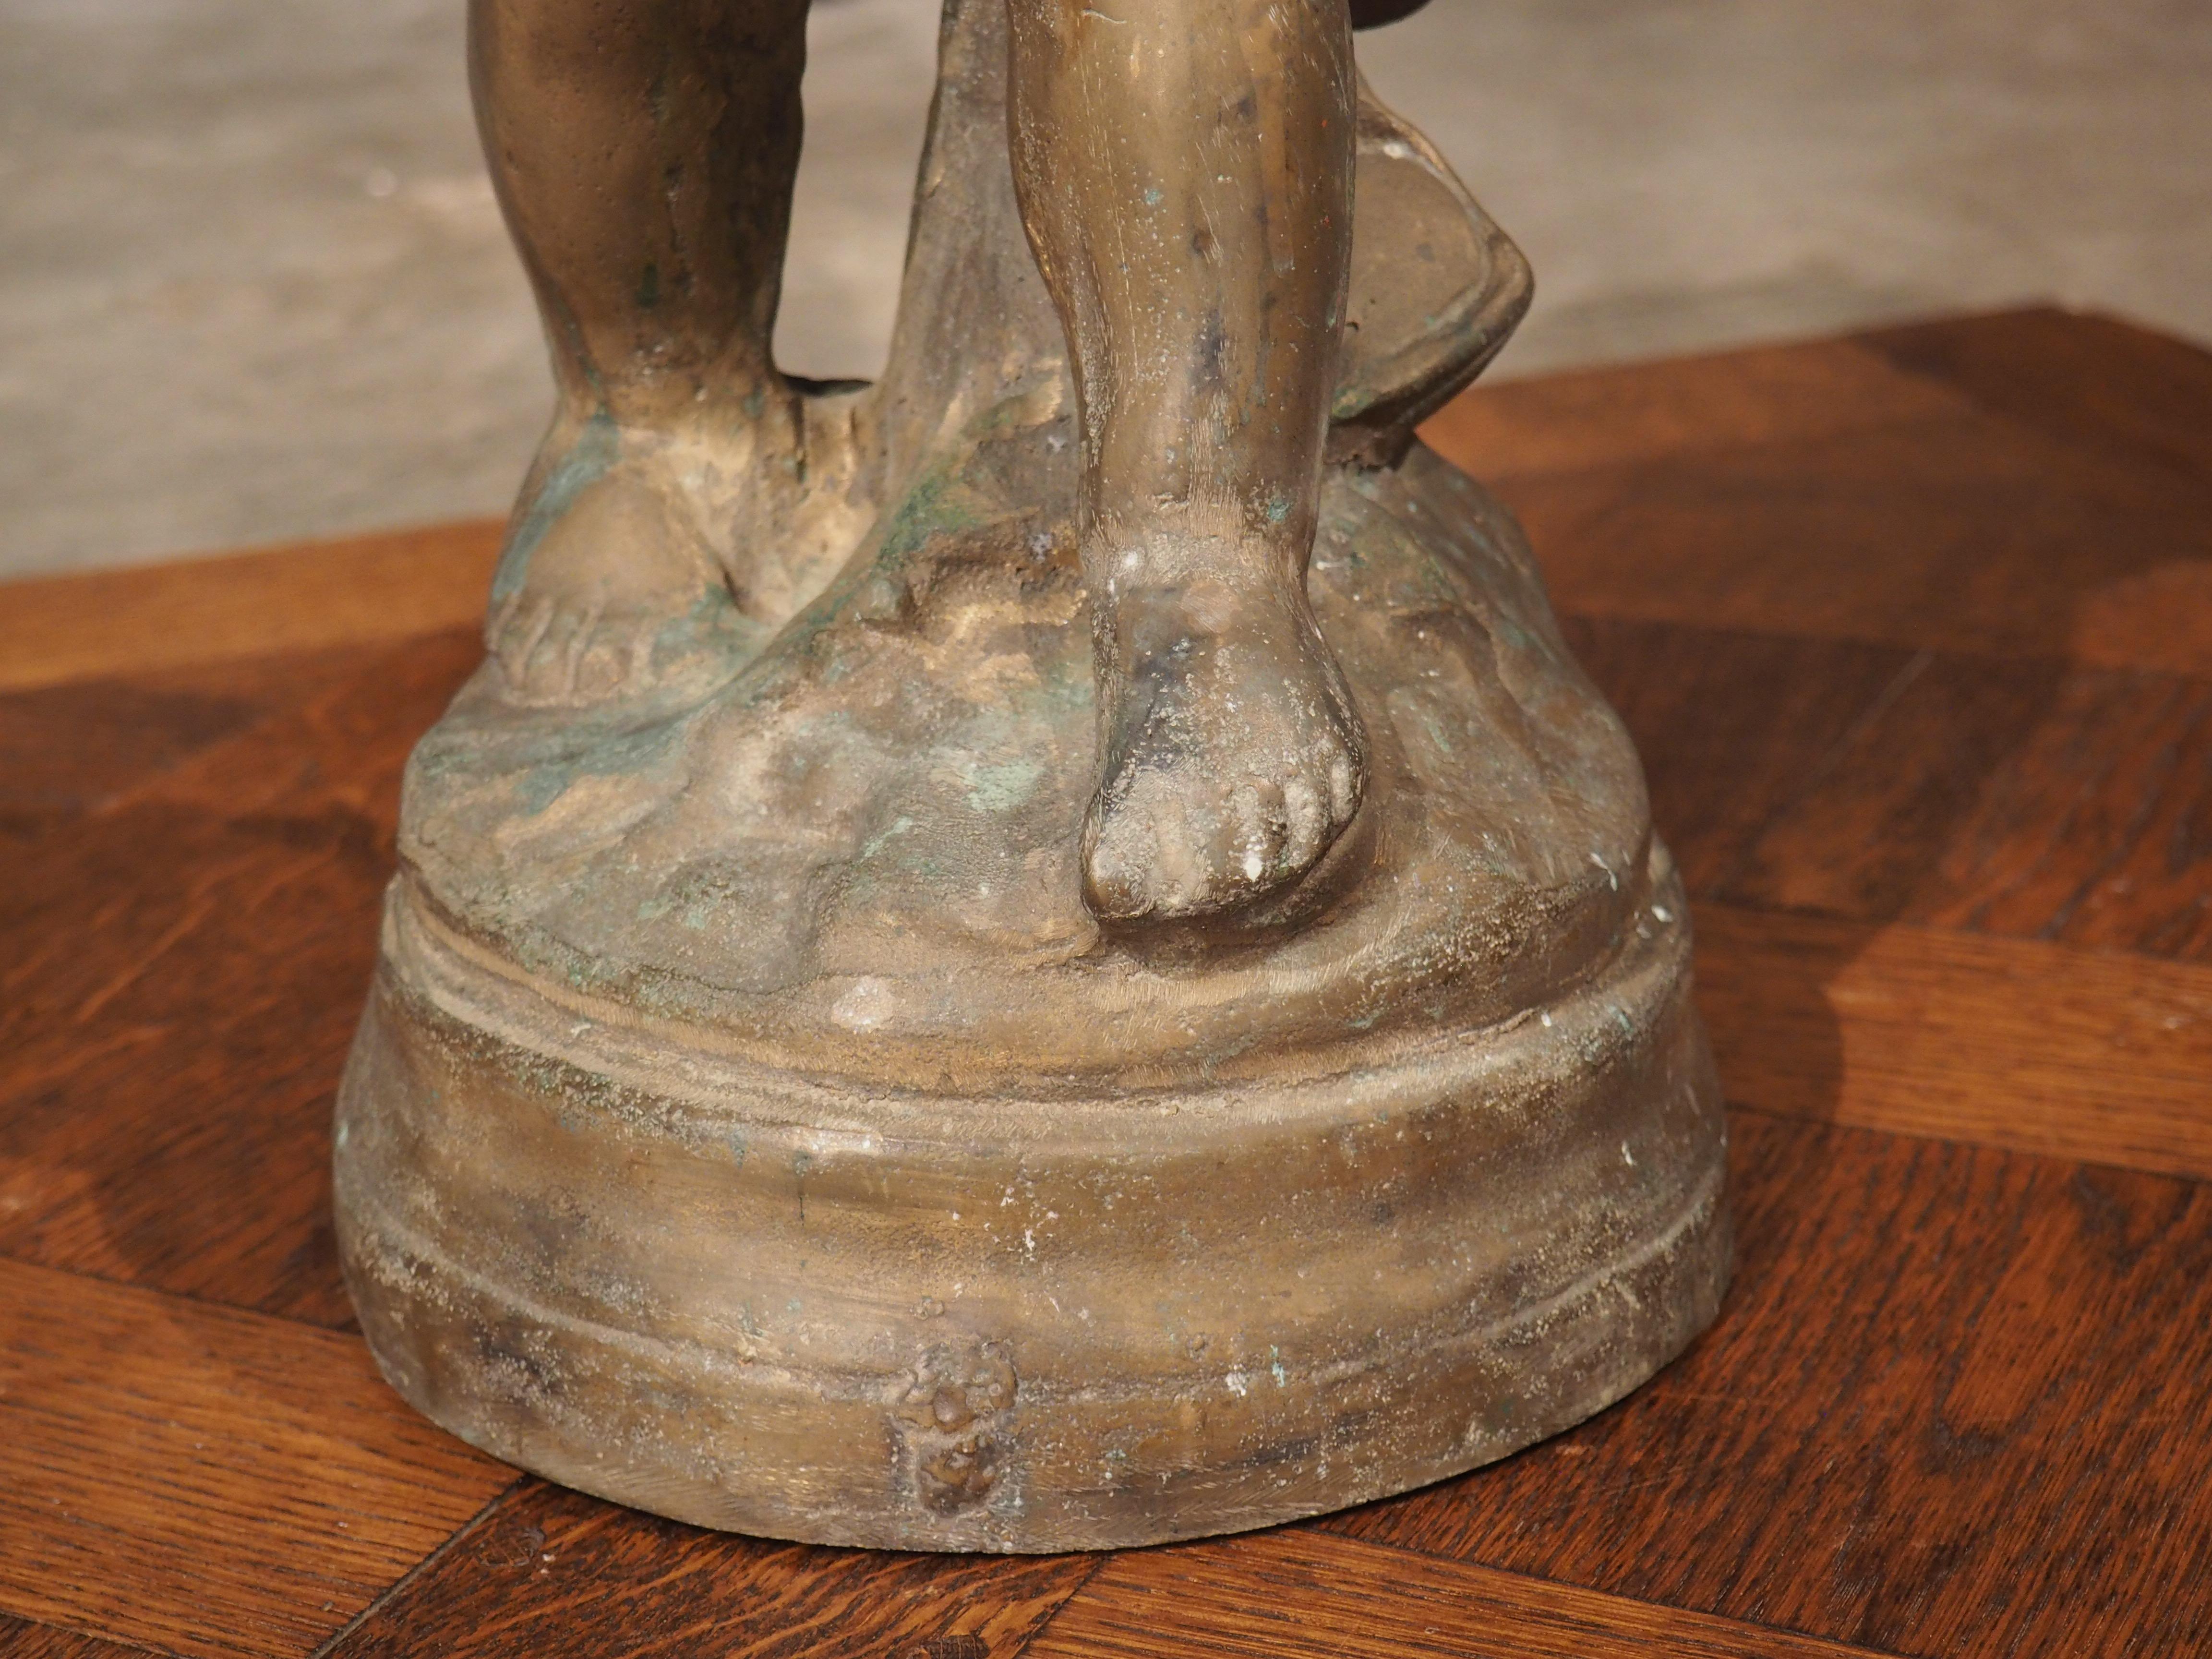 Diese bezaubernde Bronzestatue wurde um 1900 in Frankreich gegossen und besitzt eine reiche Patina mit einer faszinierenden Mischung aus Türkis-, Gold- und Graupatina, die ihr eine einzigartige und zeitlose Ausstrahlung verleiht. Die Skulptur, die